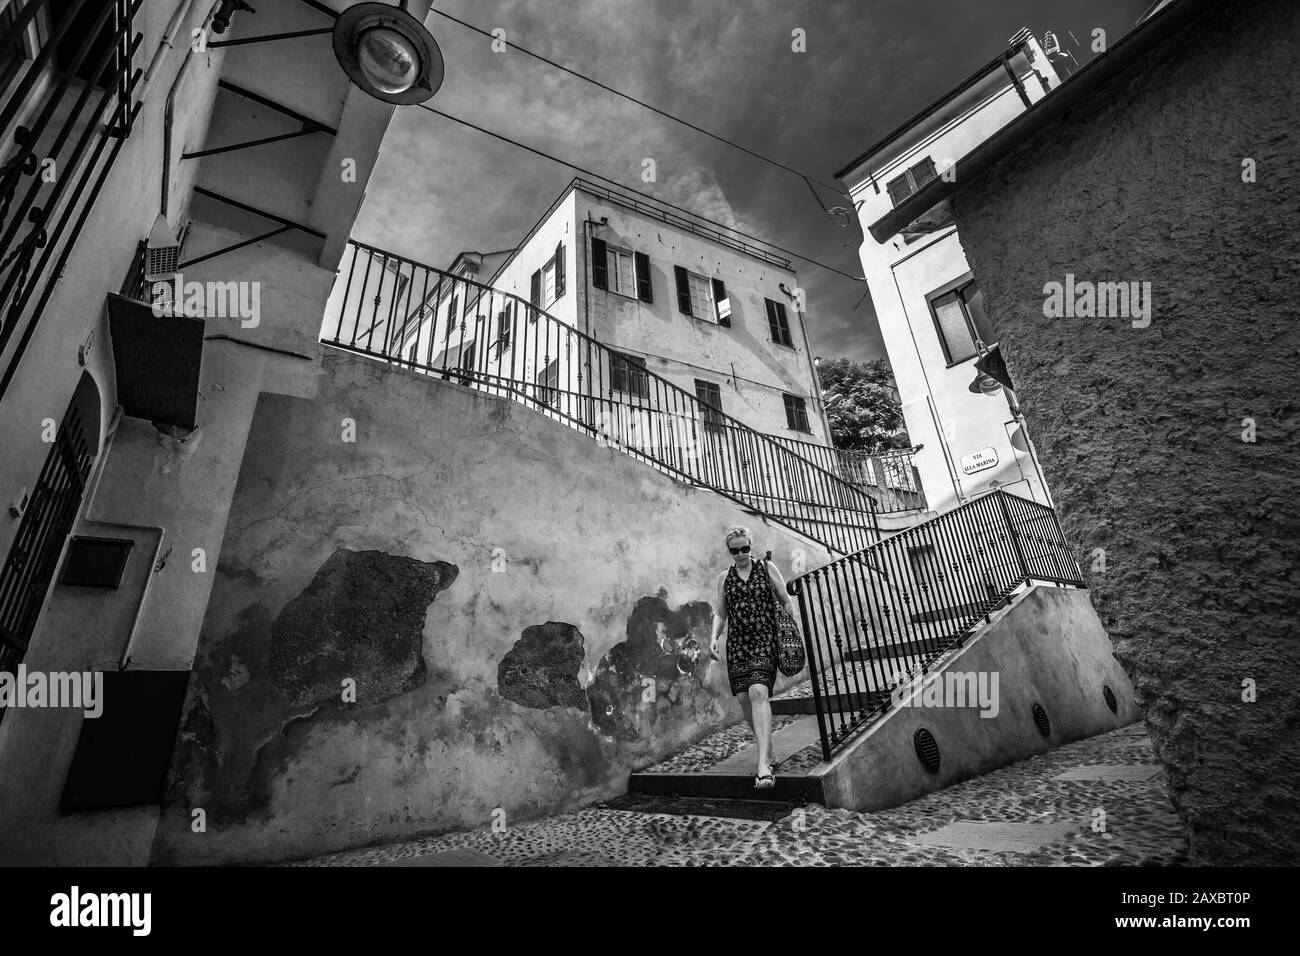 Borgio VEREZZI, ITALIEN - 30. Juli 2017: Schwarz-weiß einer Zitadinecke, Frau kommt die Treppe hinunter Stockfoto